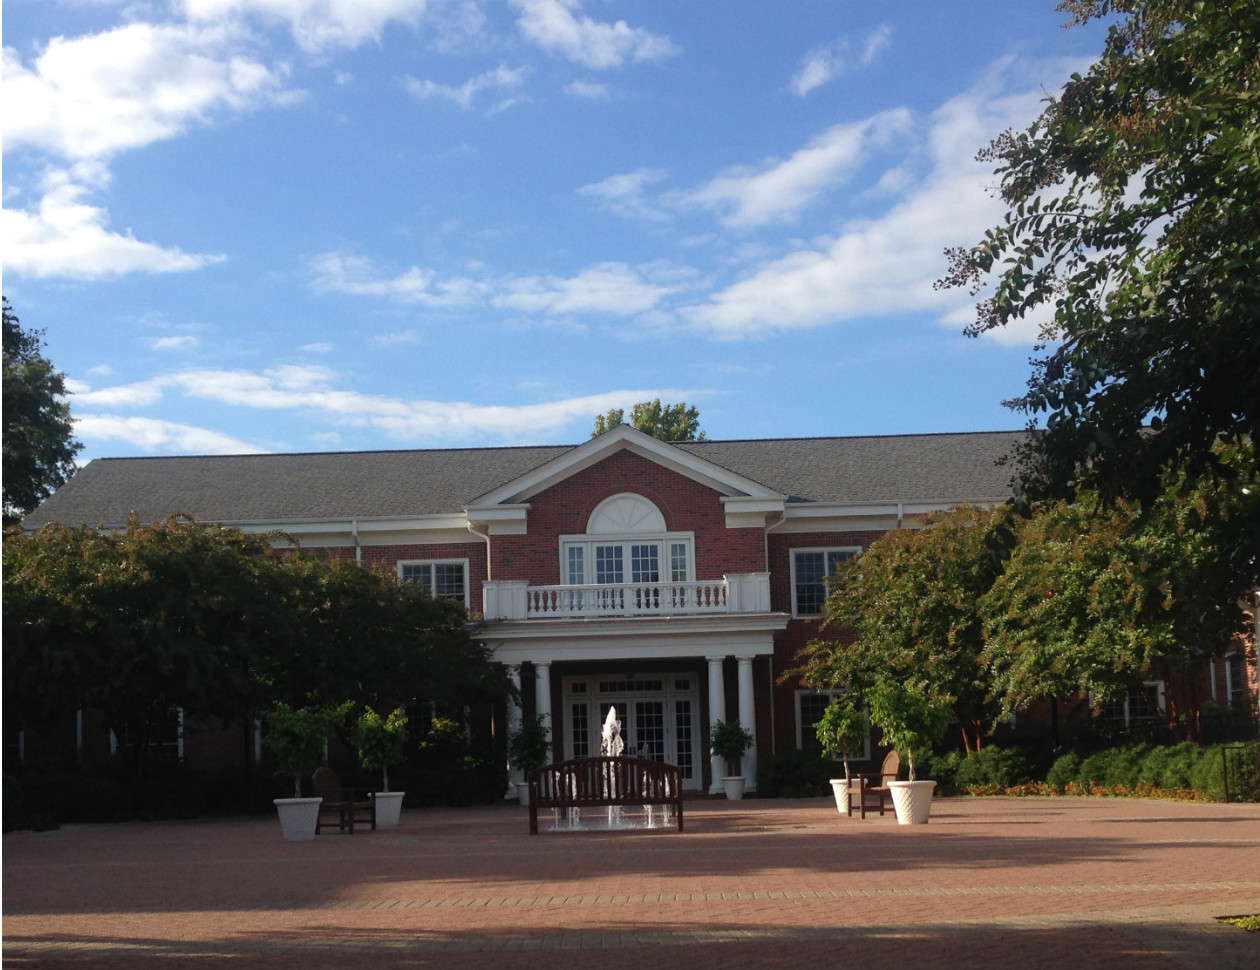 Jepson Alumni Center, September 22, 2013